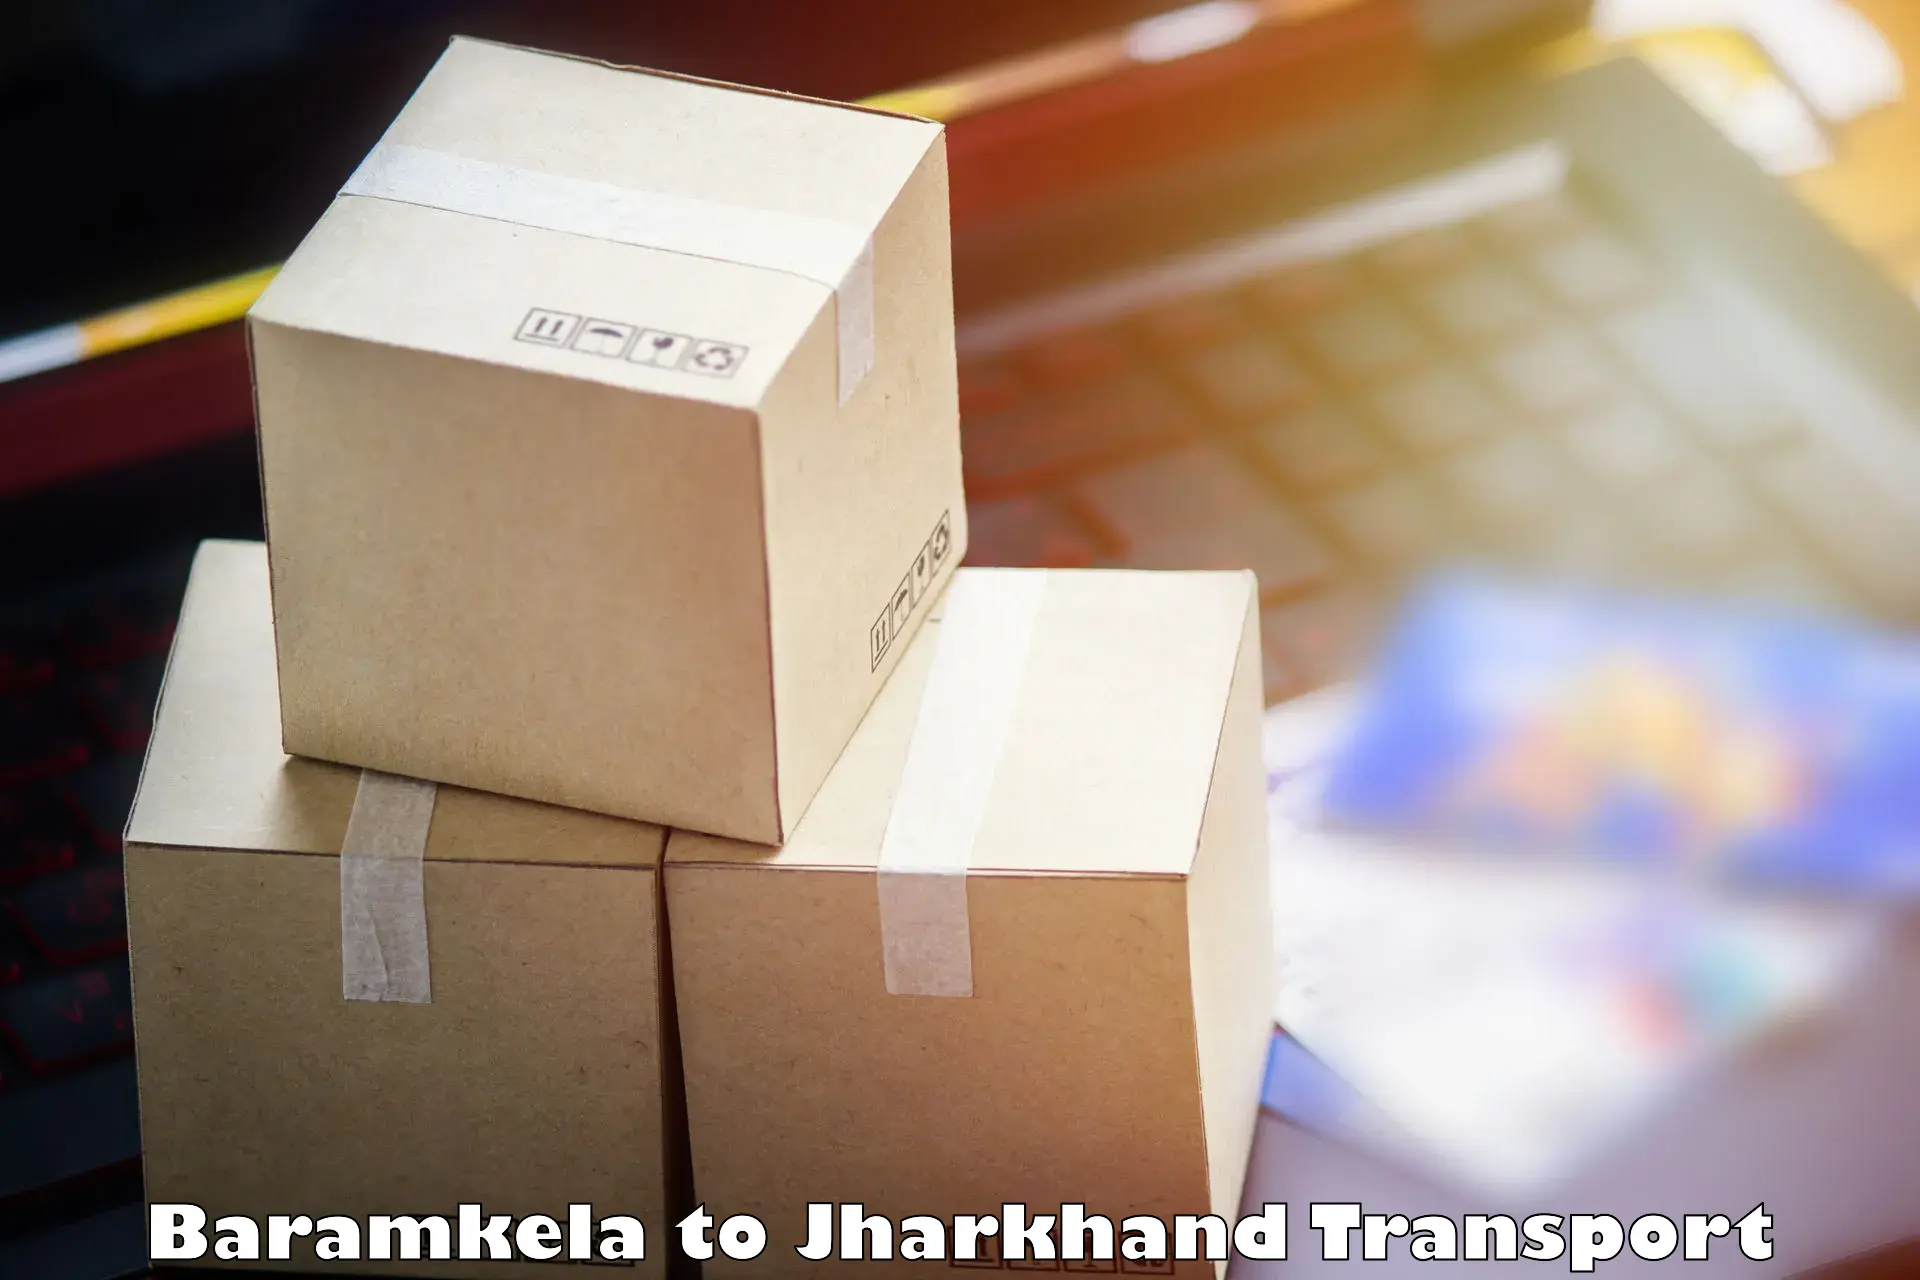 Daily transport service Baramkela to Latehar